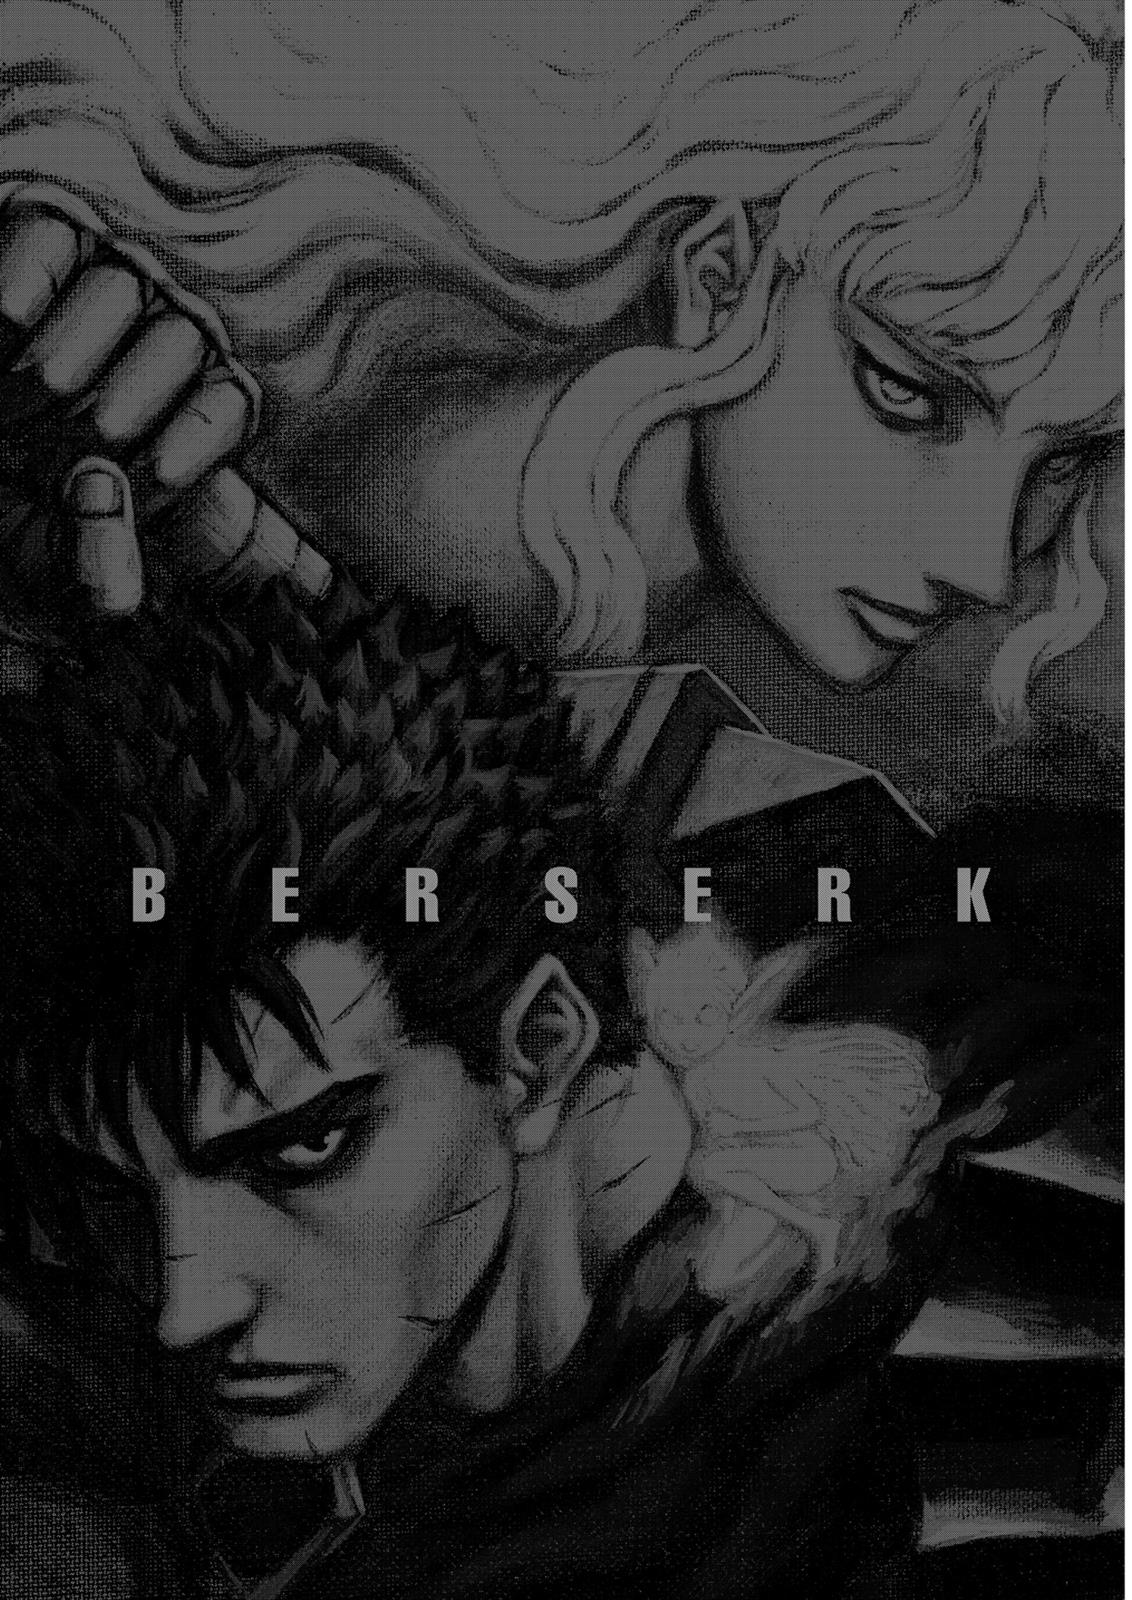 Berserk Manga Chapter 311 image 22